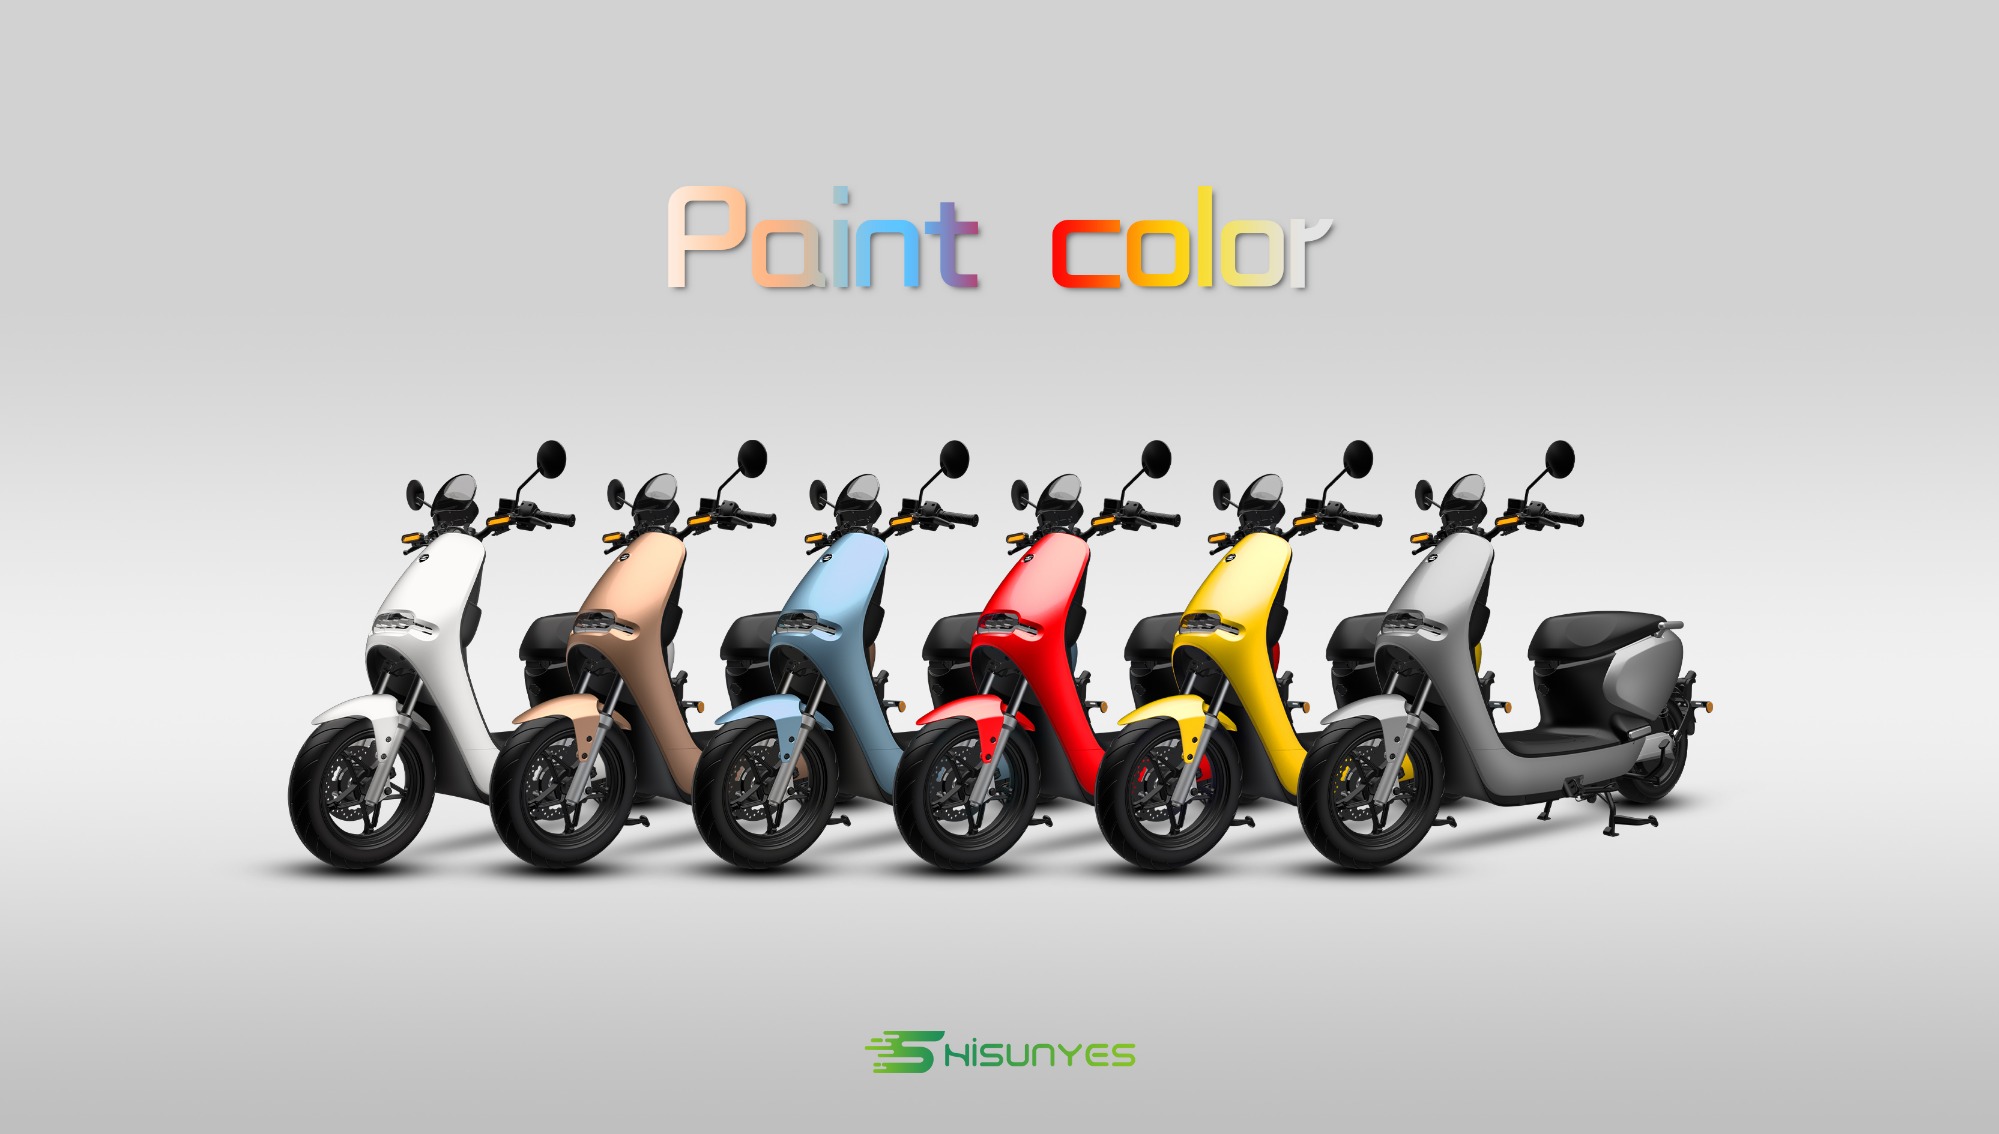 Le nouveau scooter électrique est disponible en plusieurs couleurs